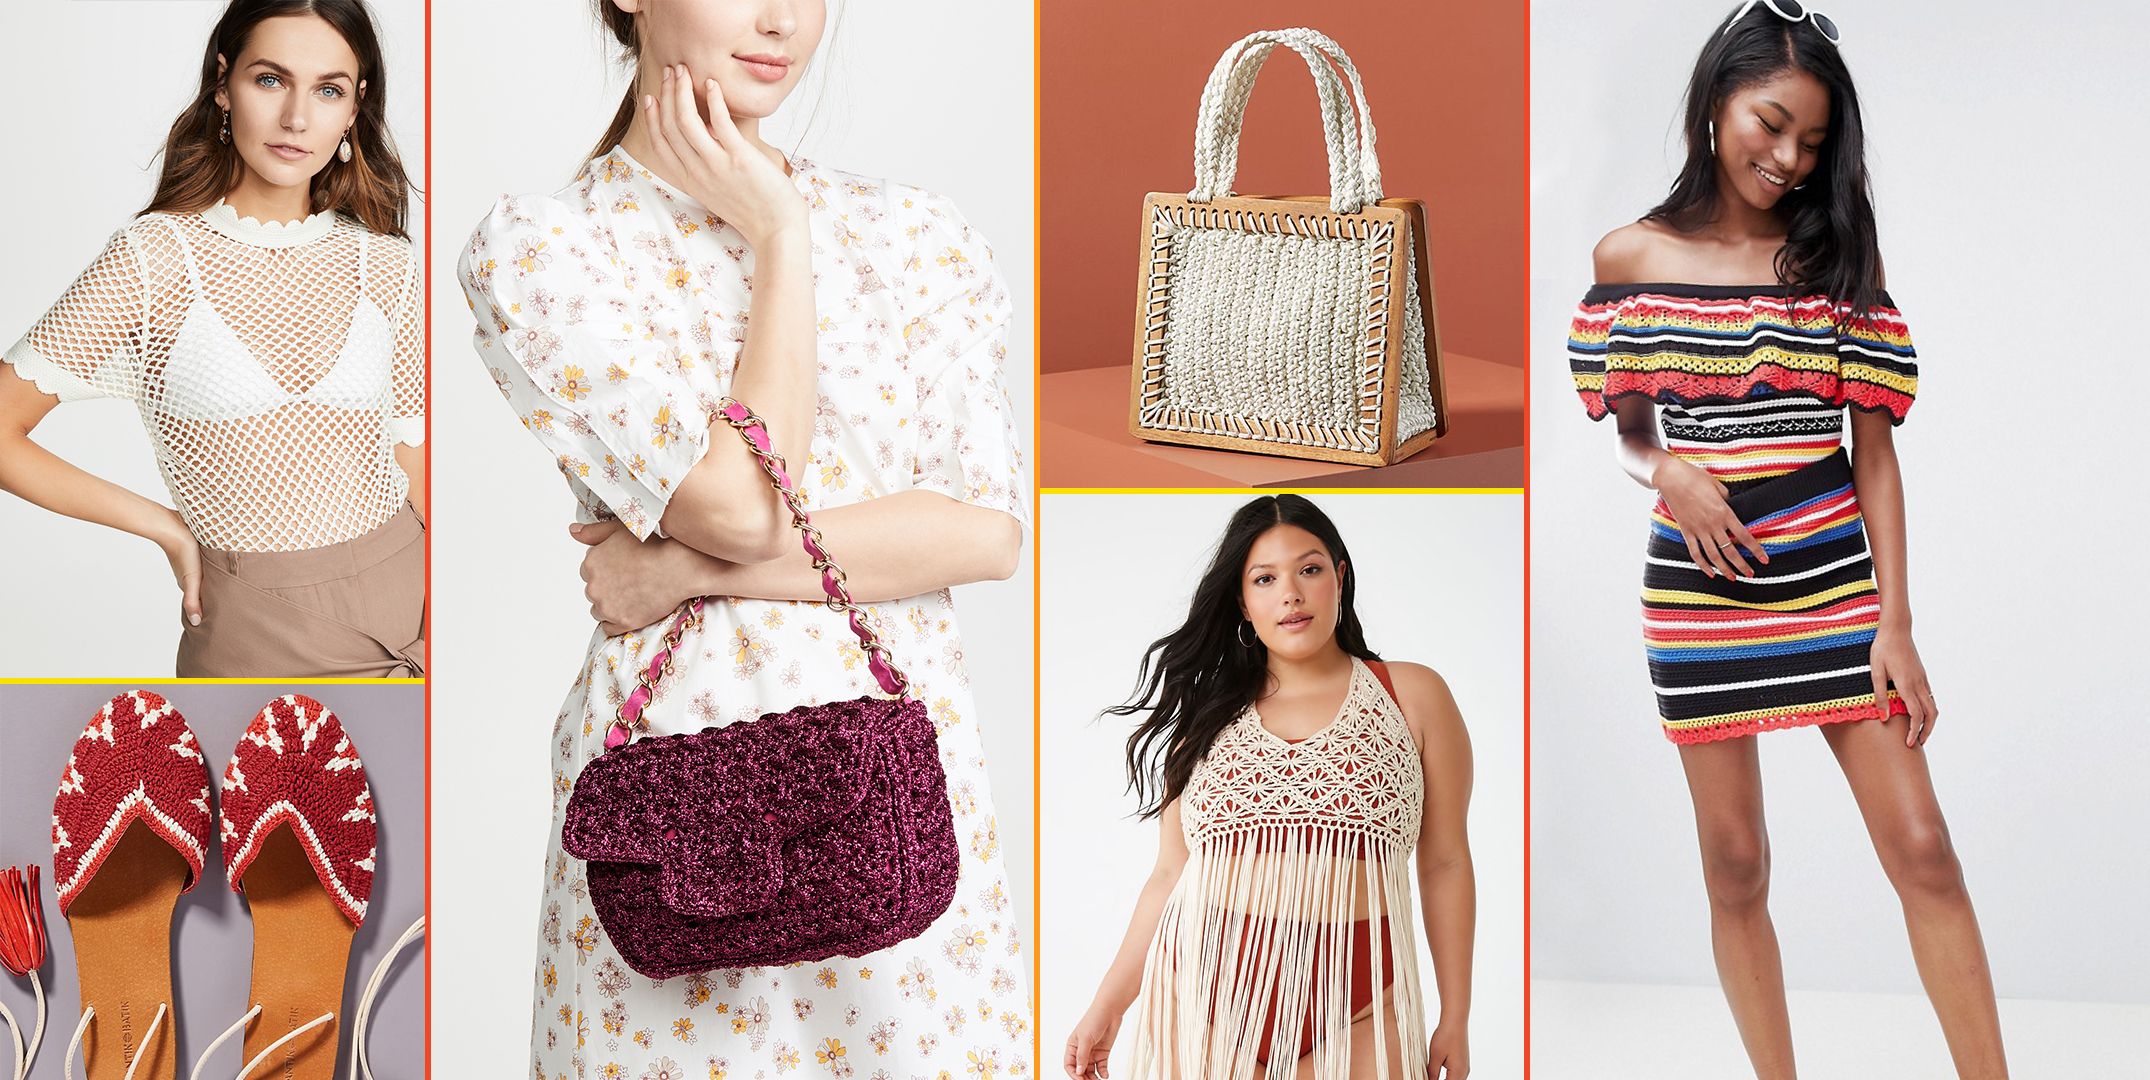 Summer trend alert: take crochet into your looks like a pro - Lookiero Blog